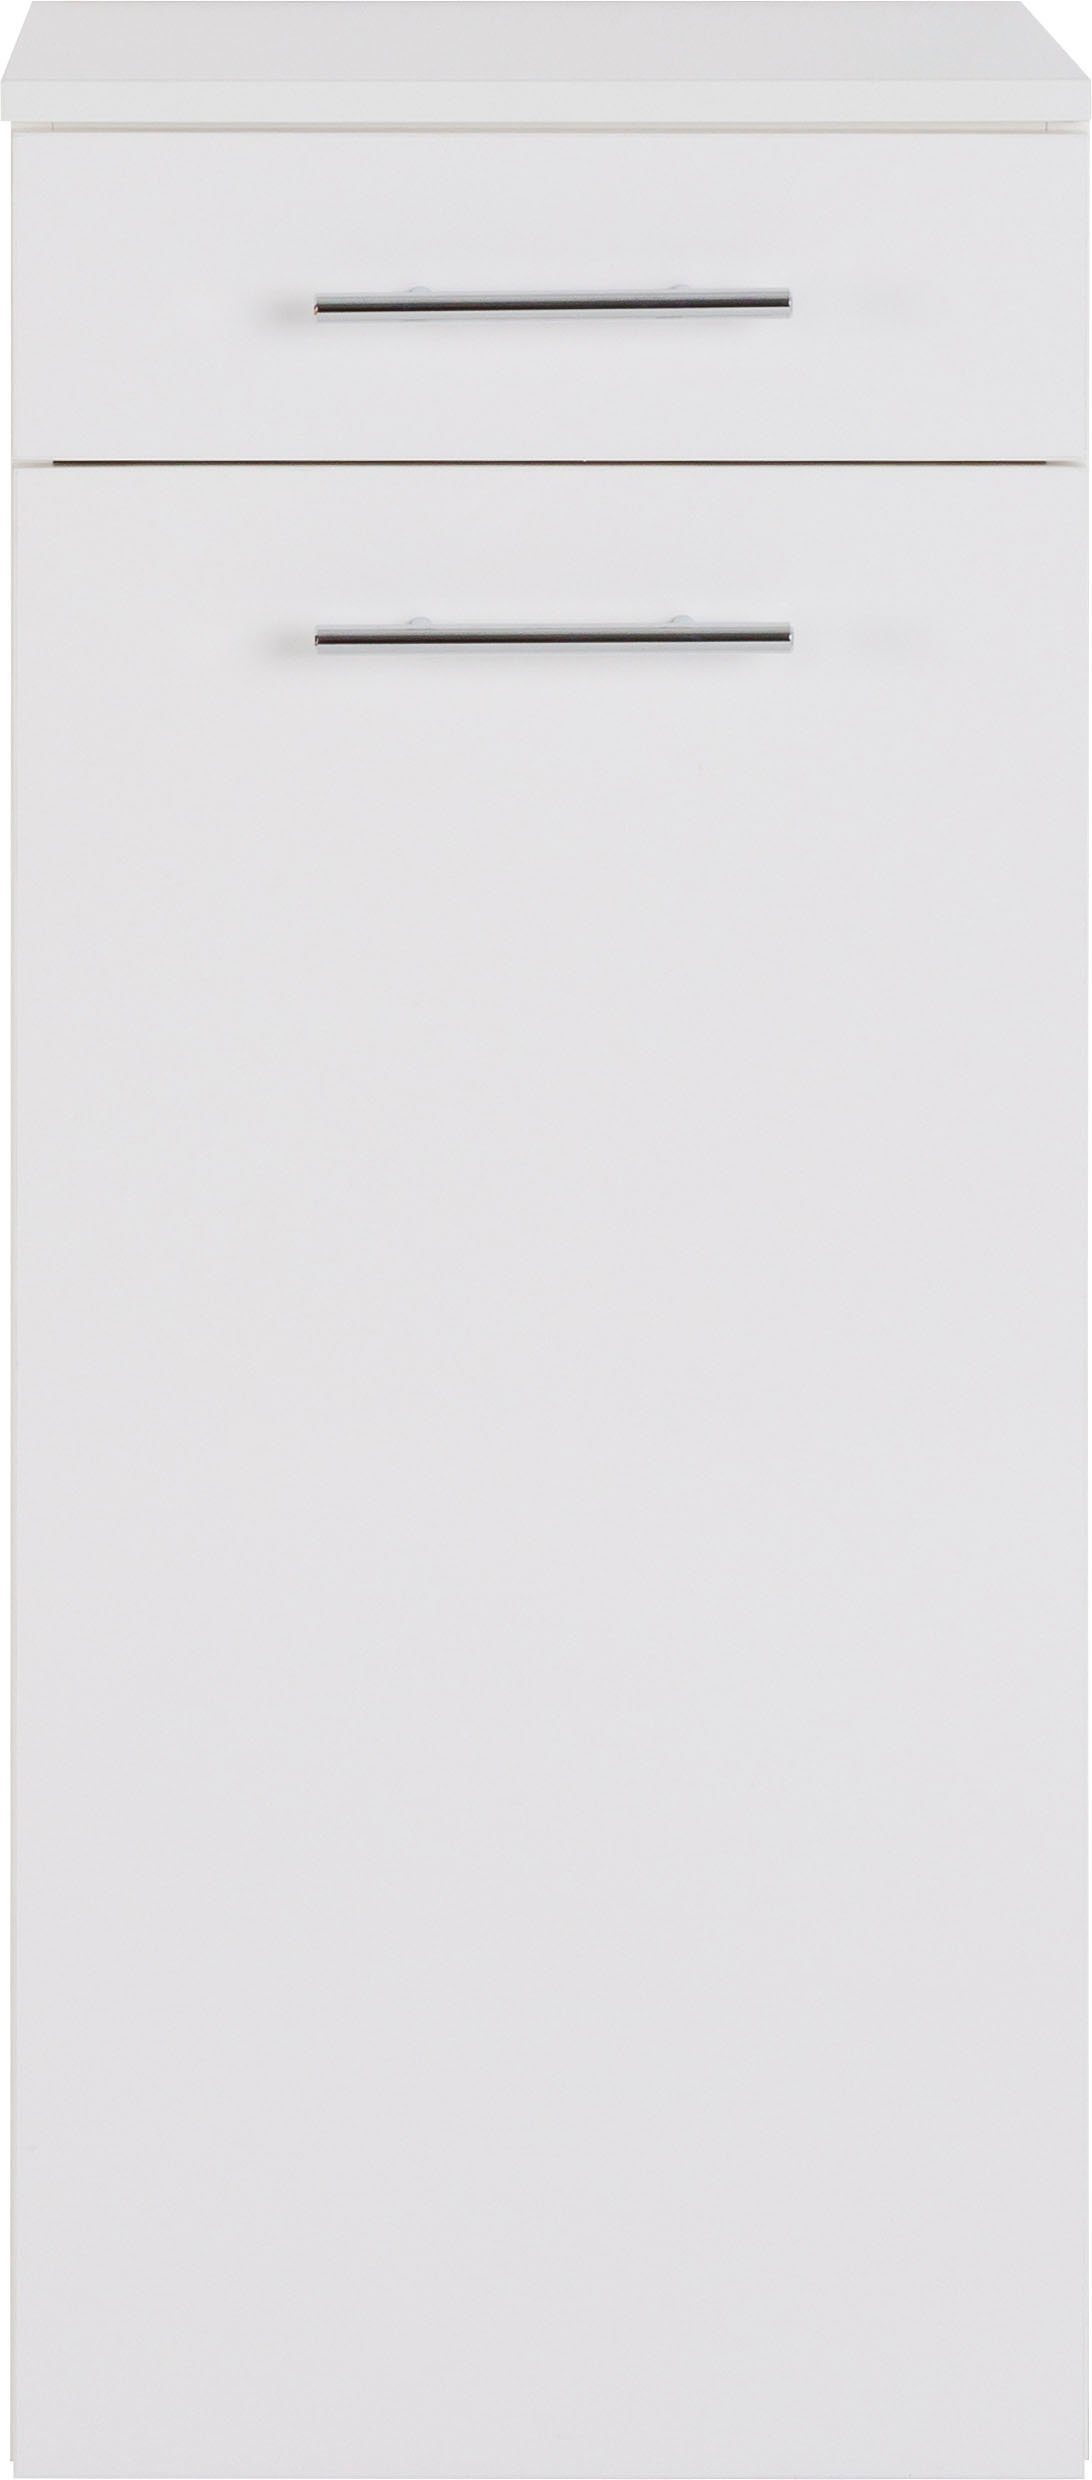 MARLIN Midischrank 3040, Breite weiß | cm weiß 40